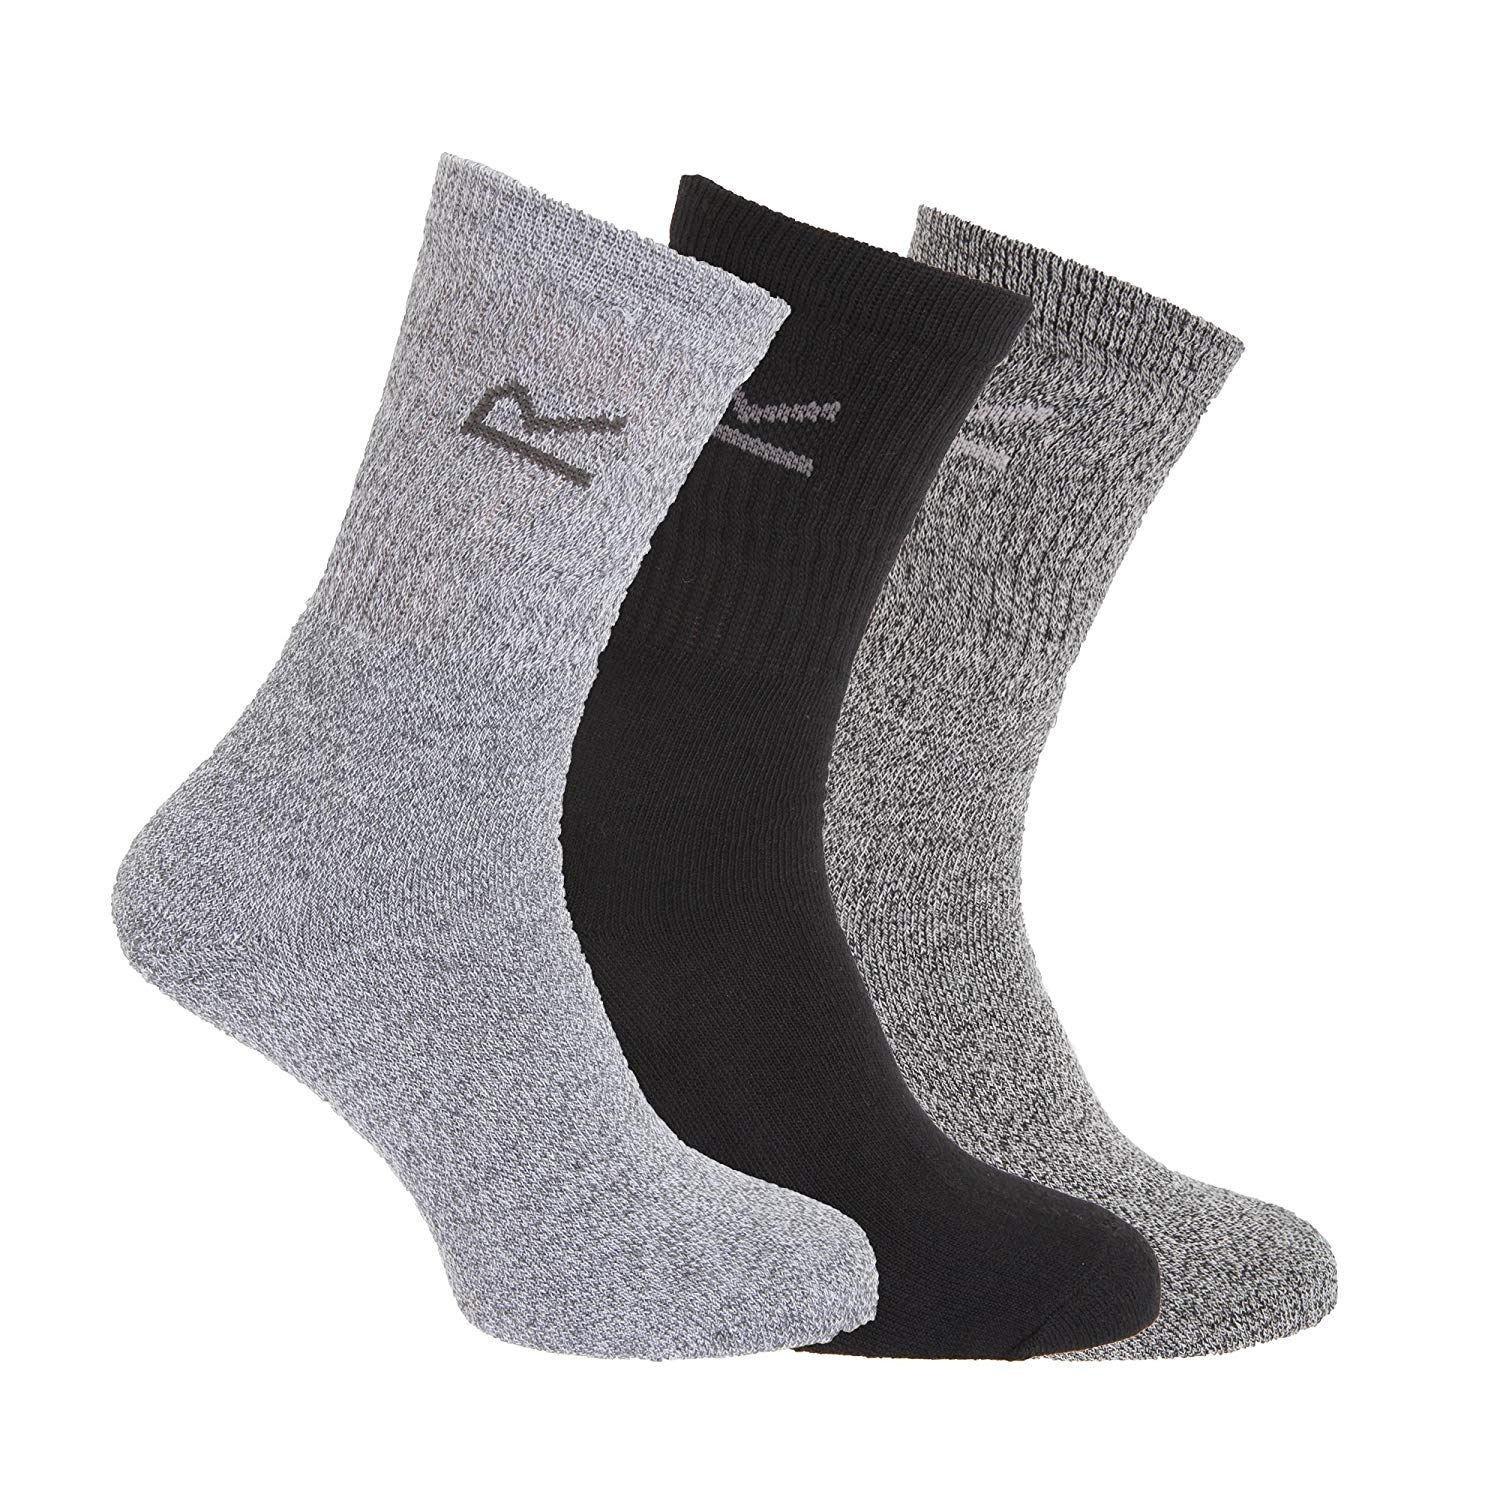 Regatta Mens Socks (3 Pack) - Grey Marl - One Size